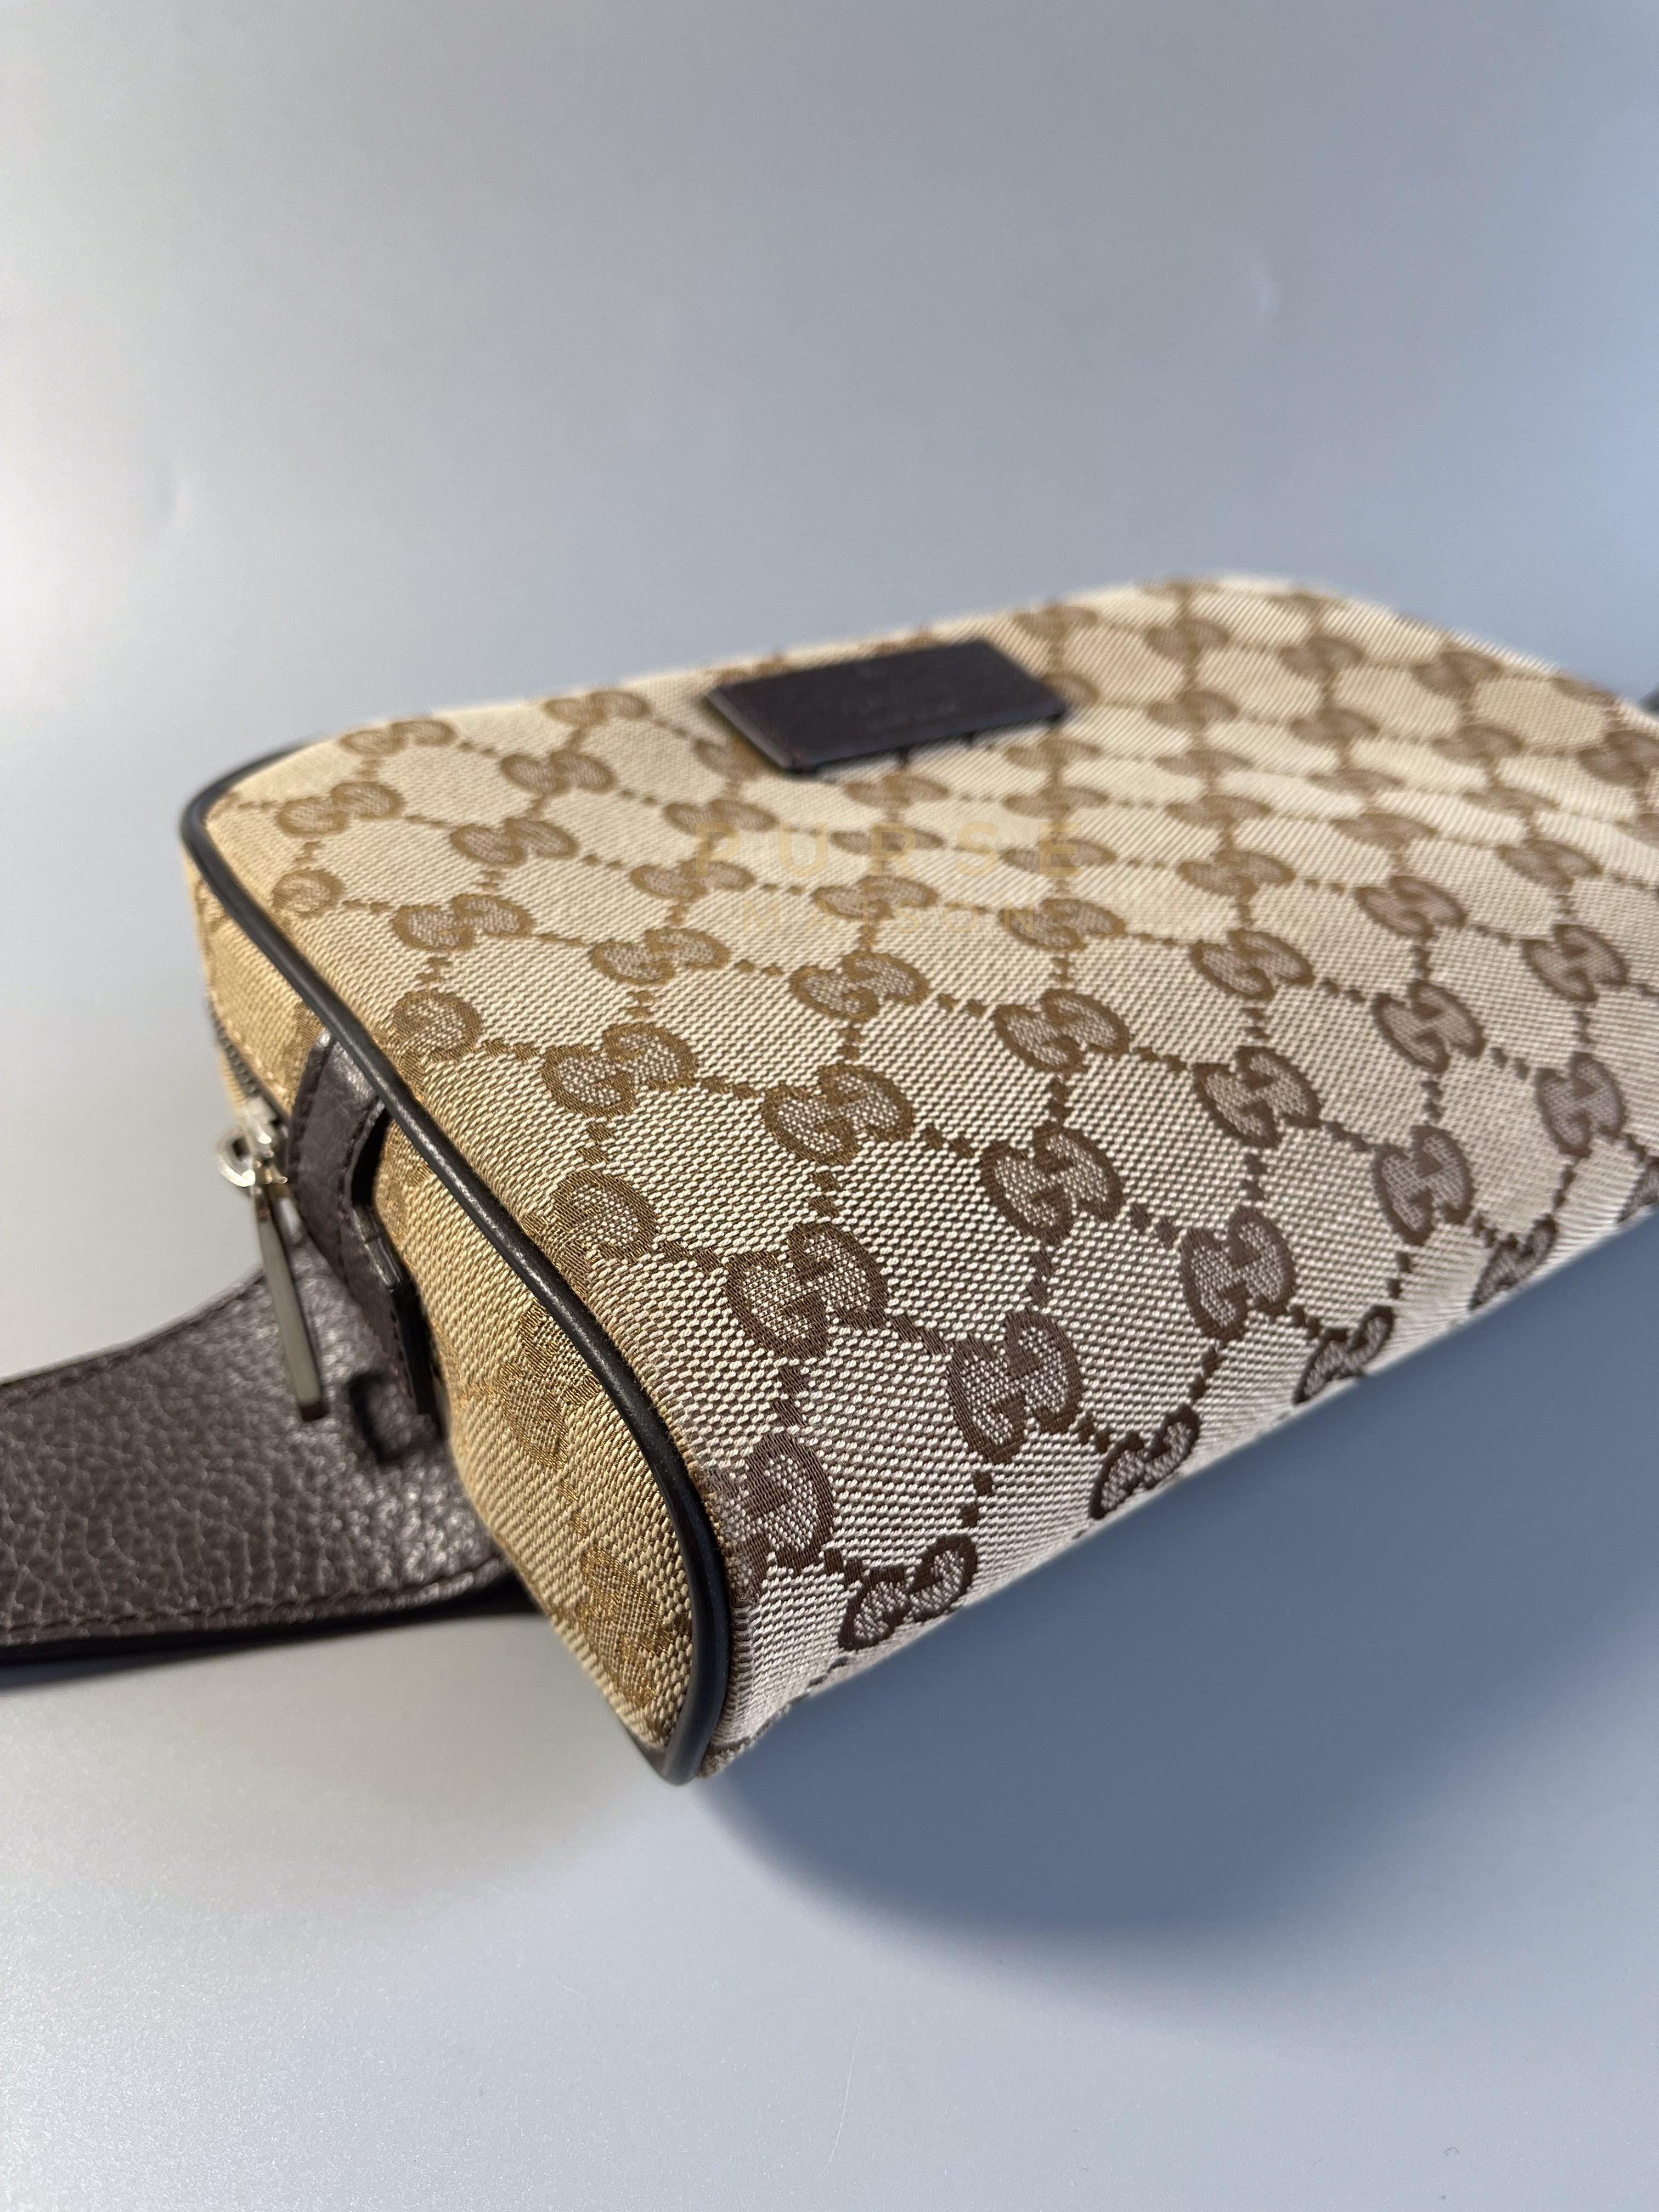 Supreme Canvas Belt Bag | Purse Maison Luxury Bags Shop